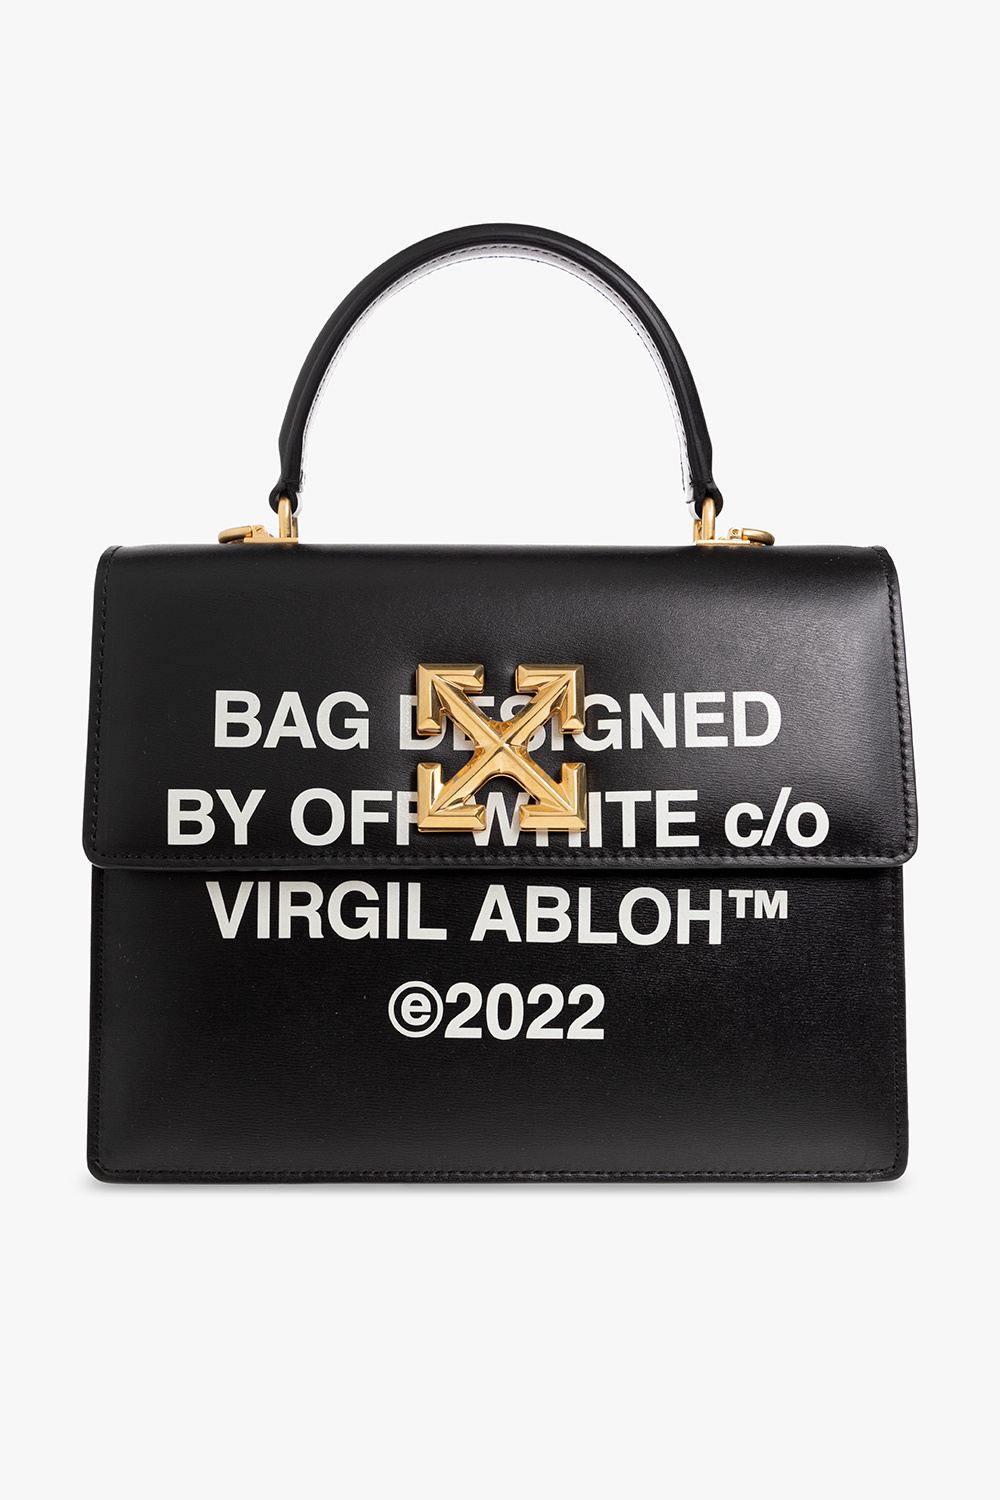 Off-White c/o Virgil Abloh 2.8 Jitney Bag in Black